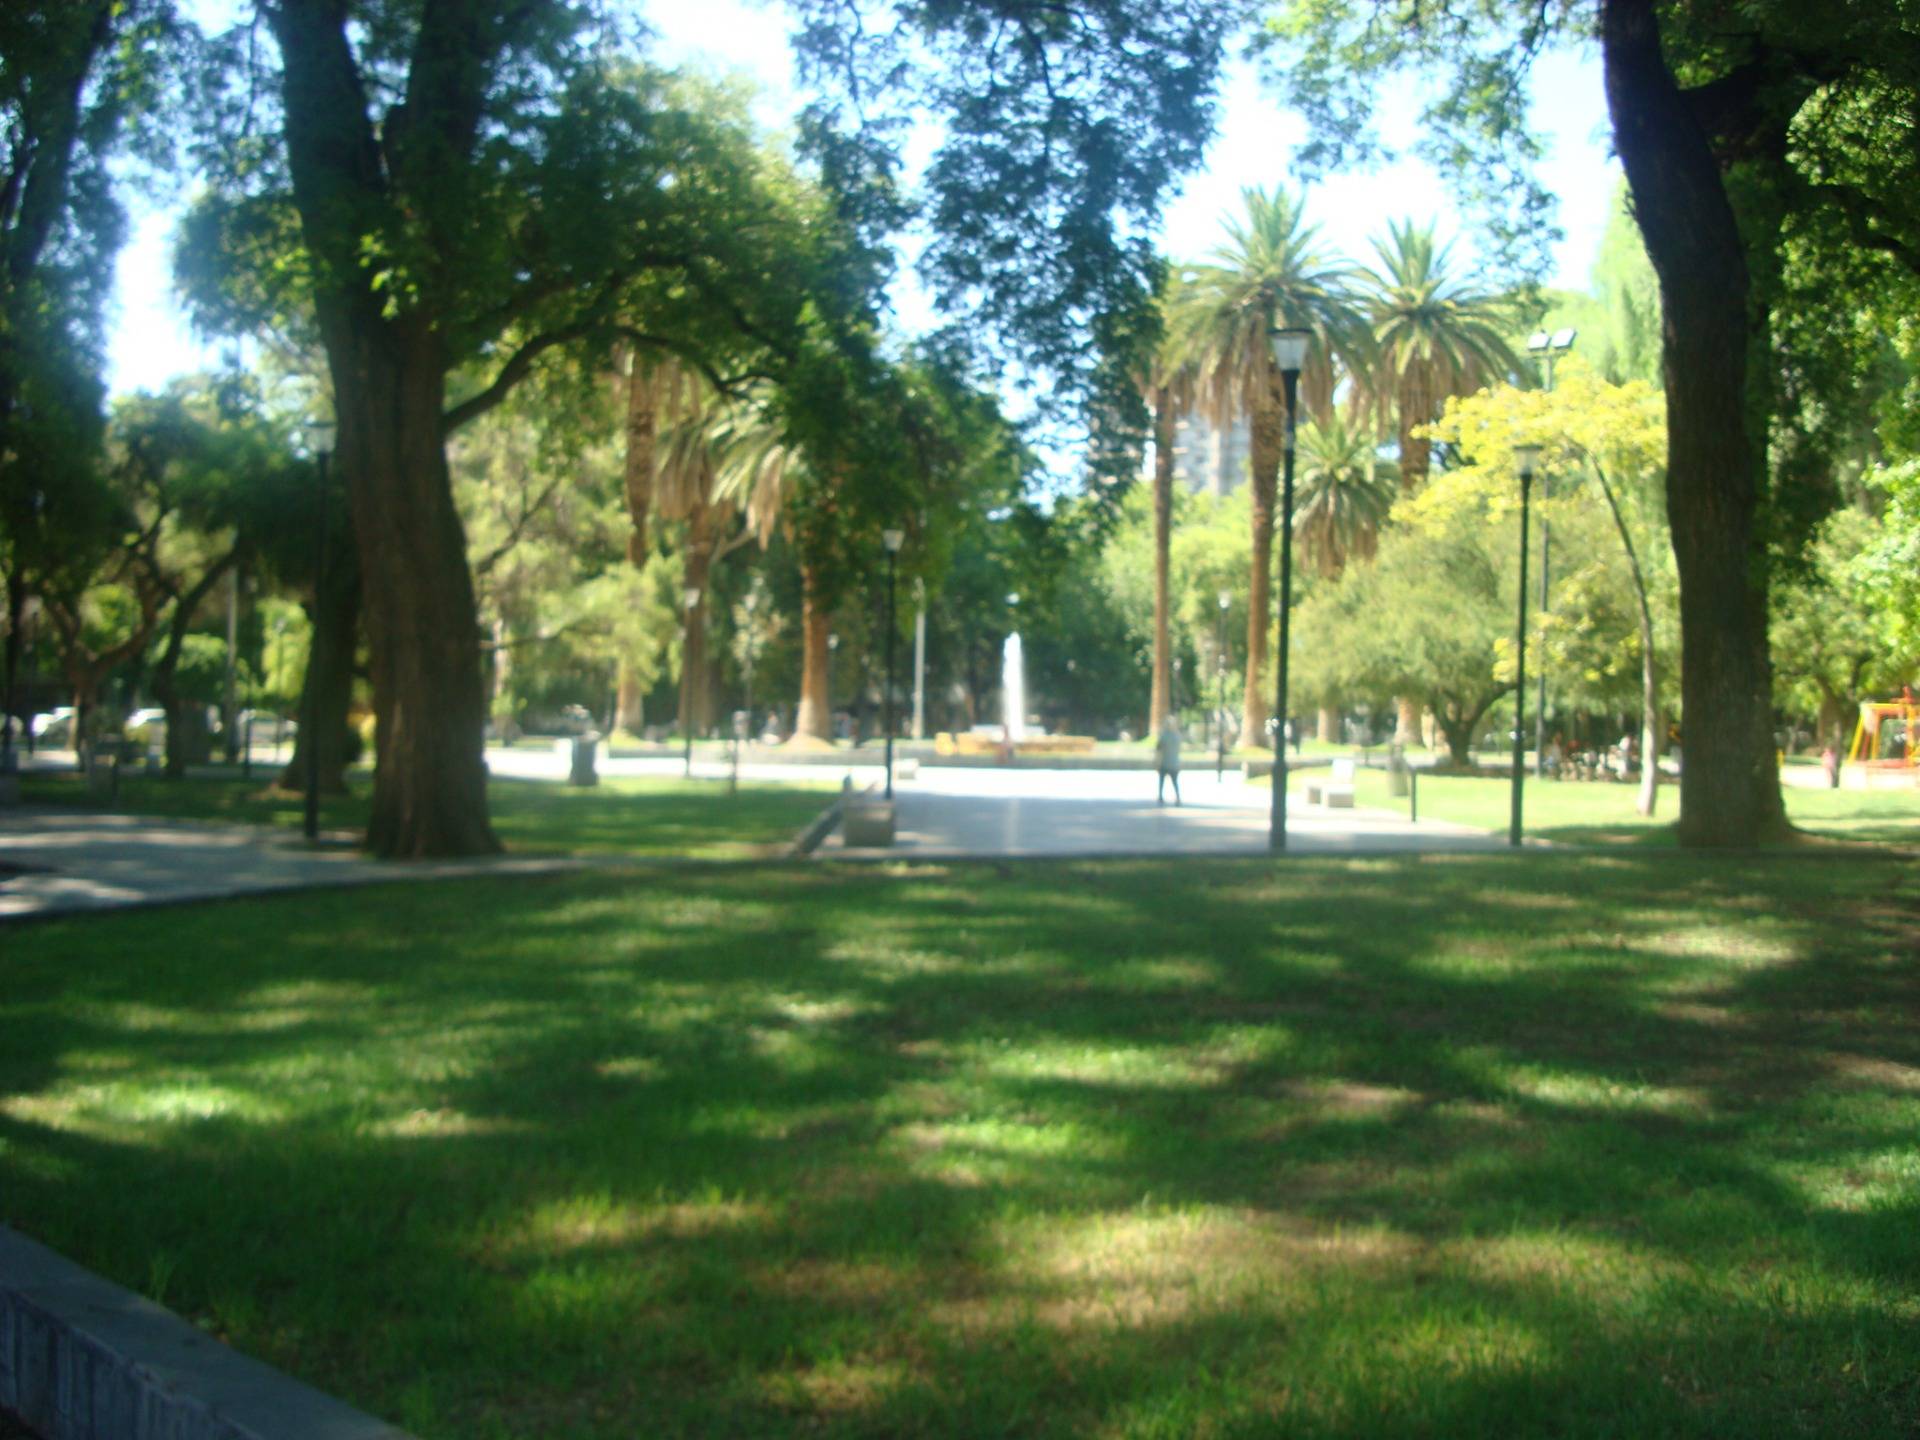 Chile Square